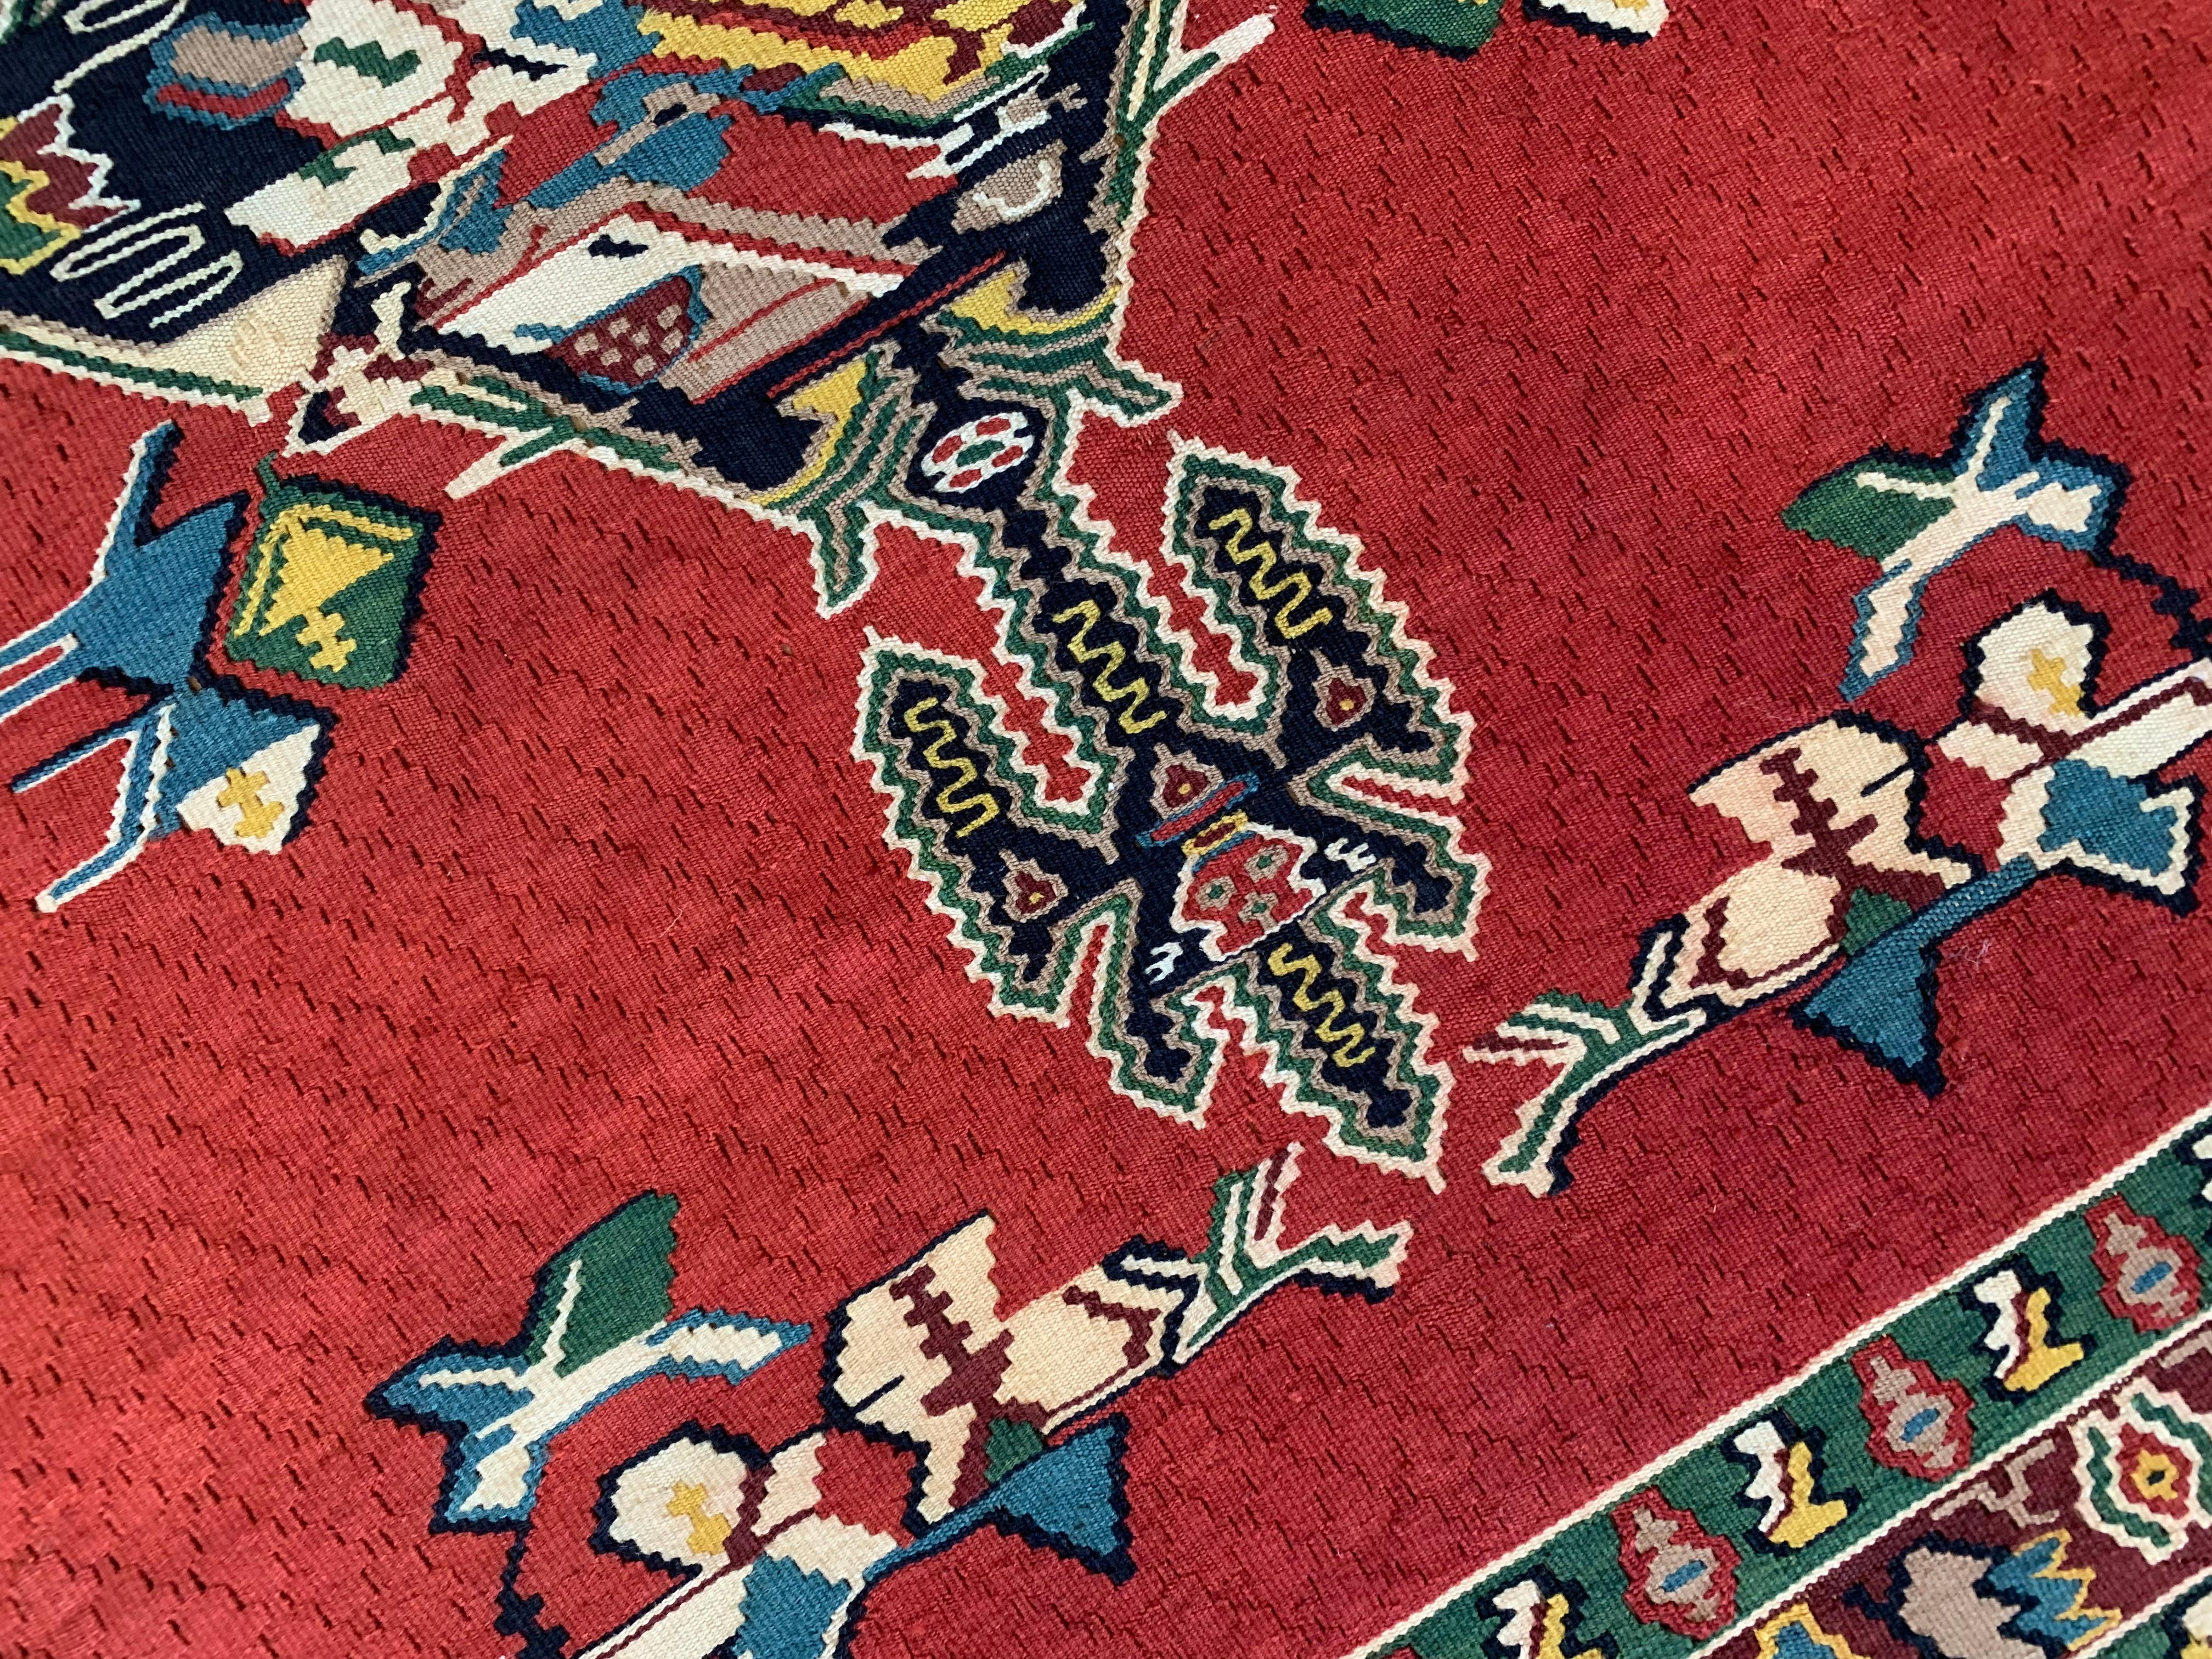 Ces magnifiques tapis sont des kilims tissés à plat à la main au début du 21e siècle, vers 2010. Il n'a pas été utilisé et est donc en excellent état. Le motif présente un fond rouge vif qui a été décoré d'un médaillon géométrique complexe. Le tout